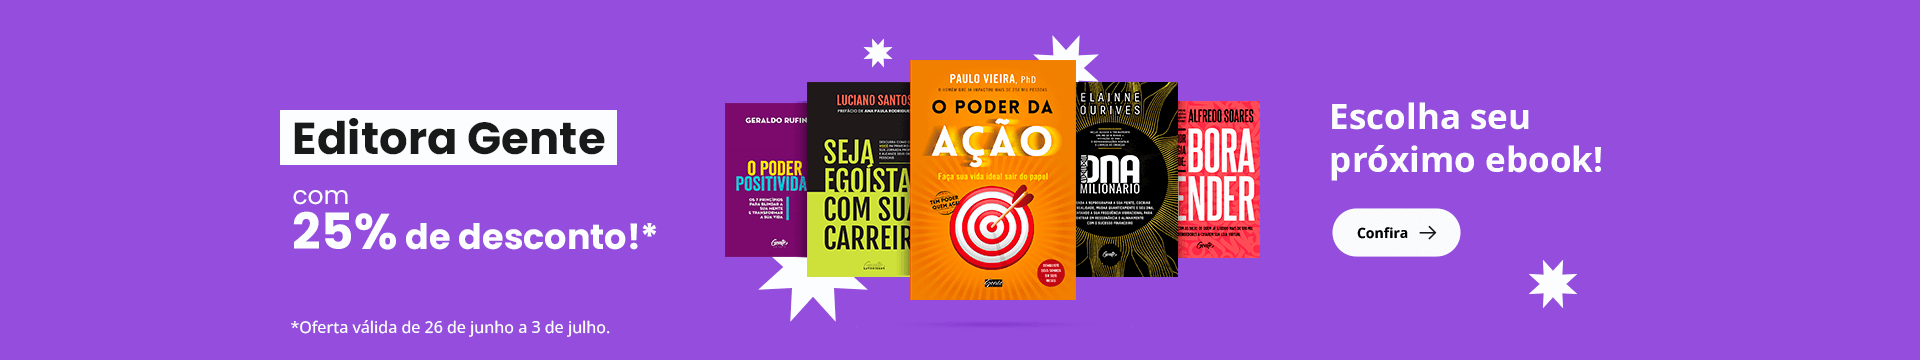 Editora Gente com 25% de desconto!* Escolha seu próximo ebook! *Oferta válida de 26 de junho a 3 de julho.